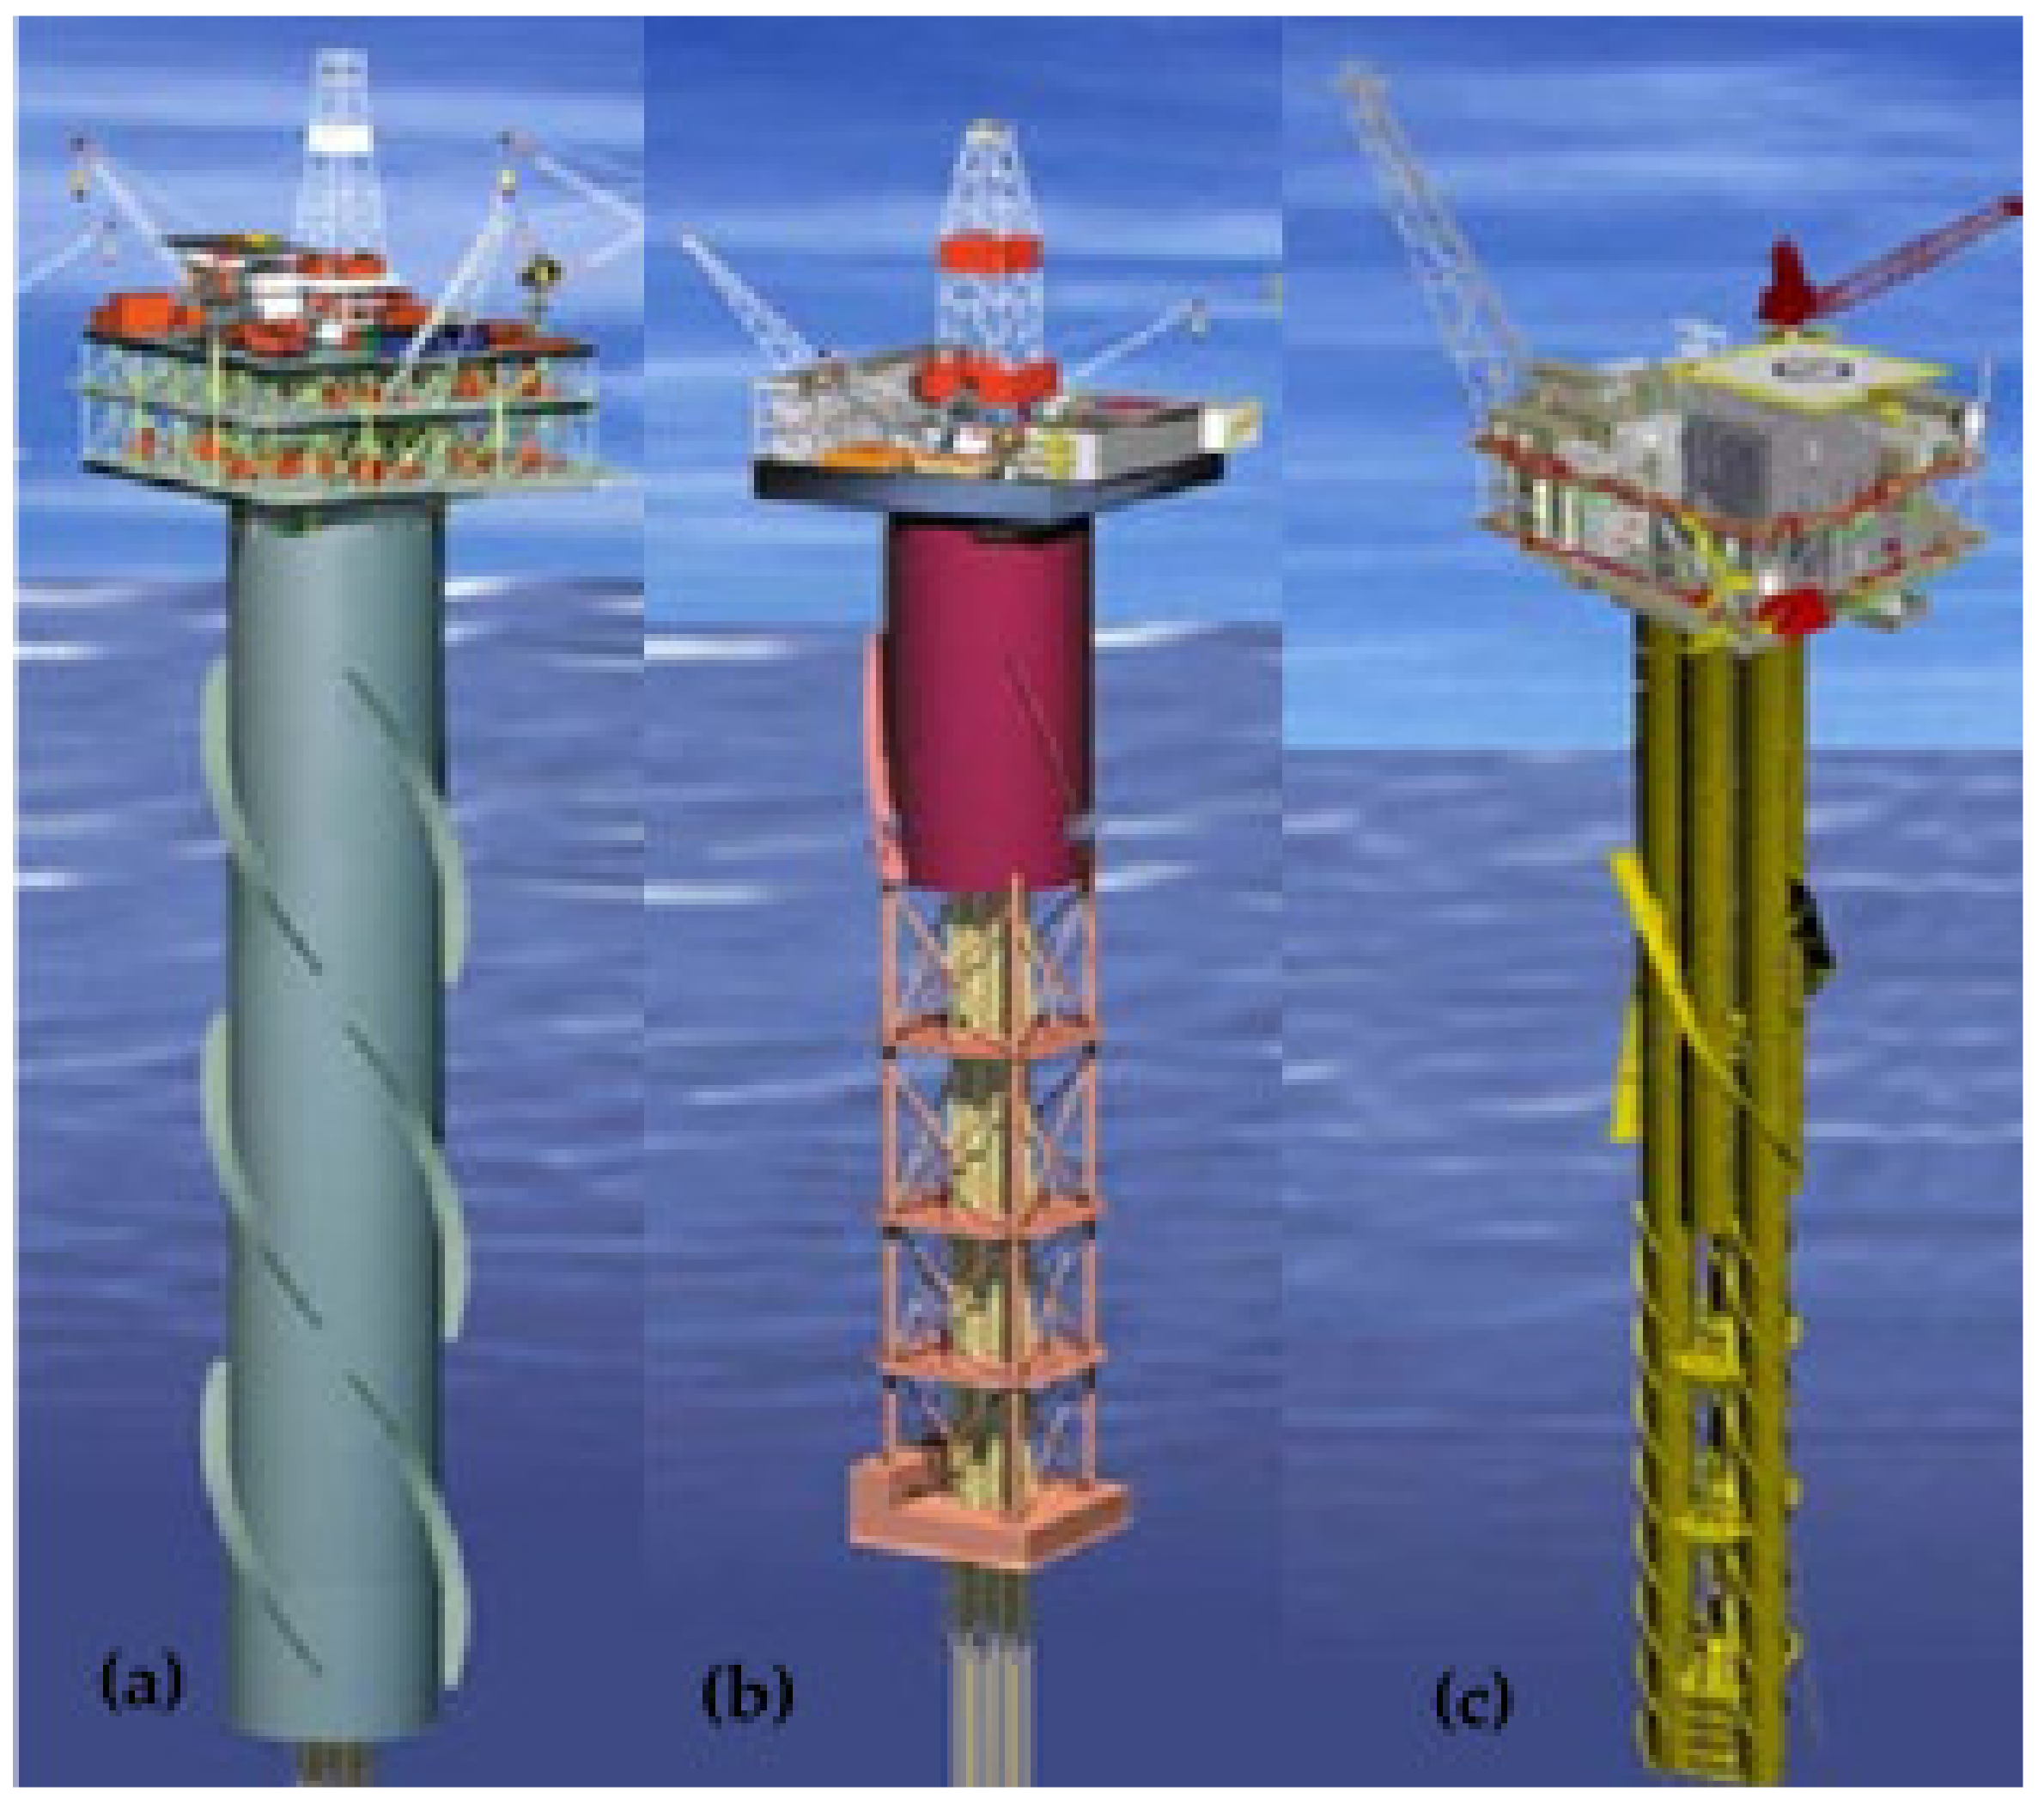 oil platforms types